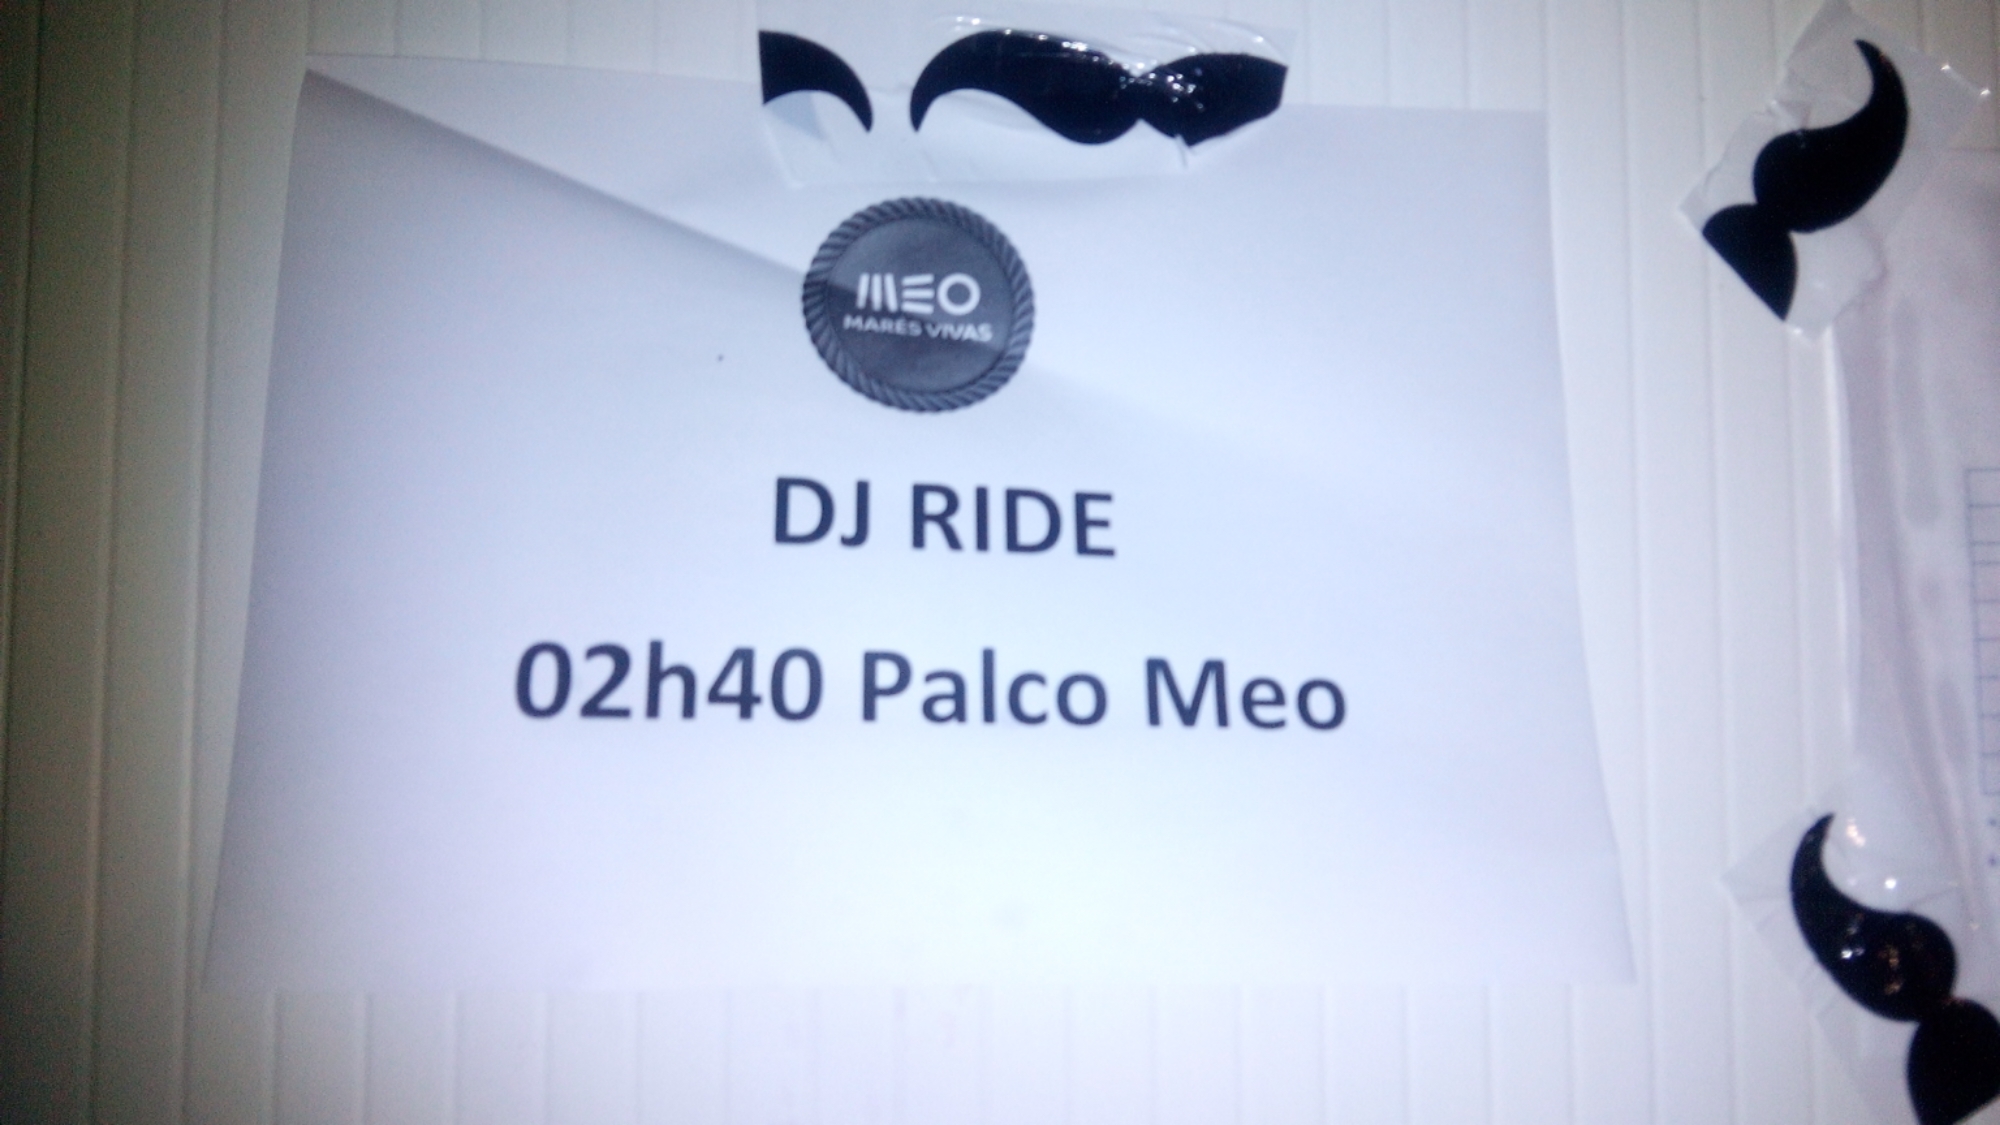 Última Hora! DJ Ride no palco MEO do #meomaresvivas